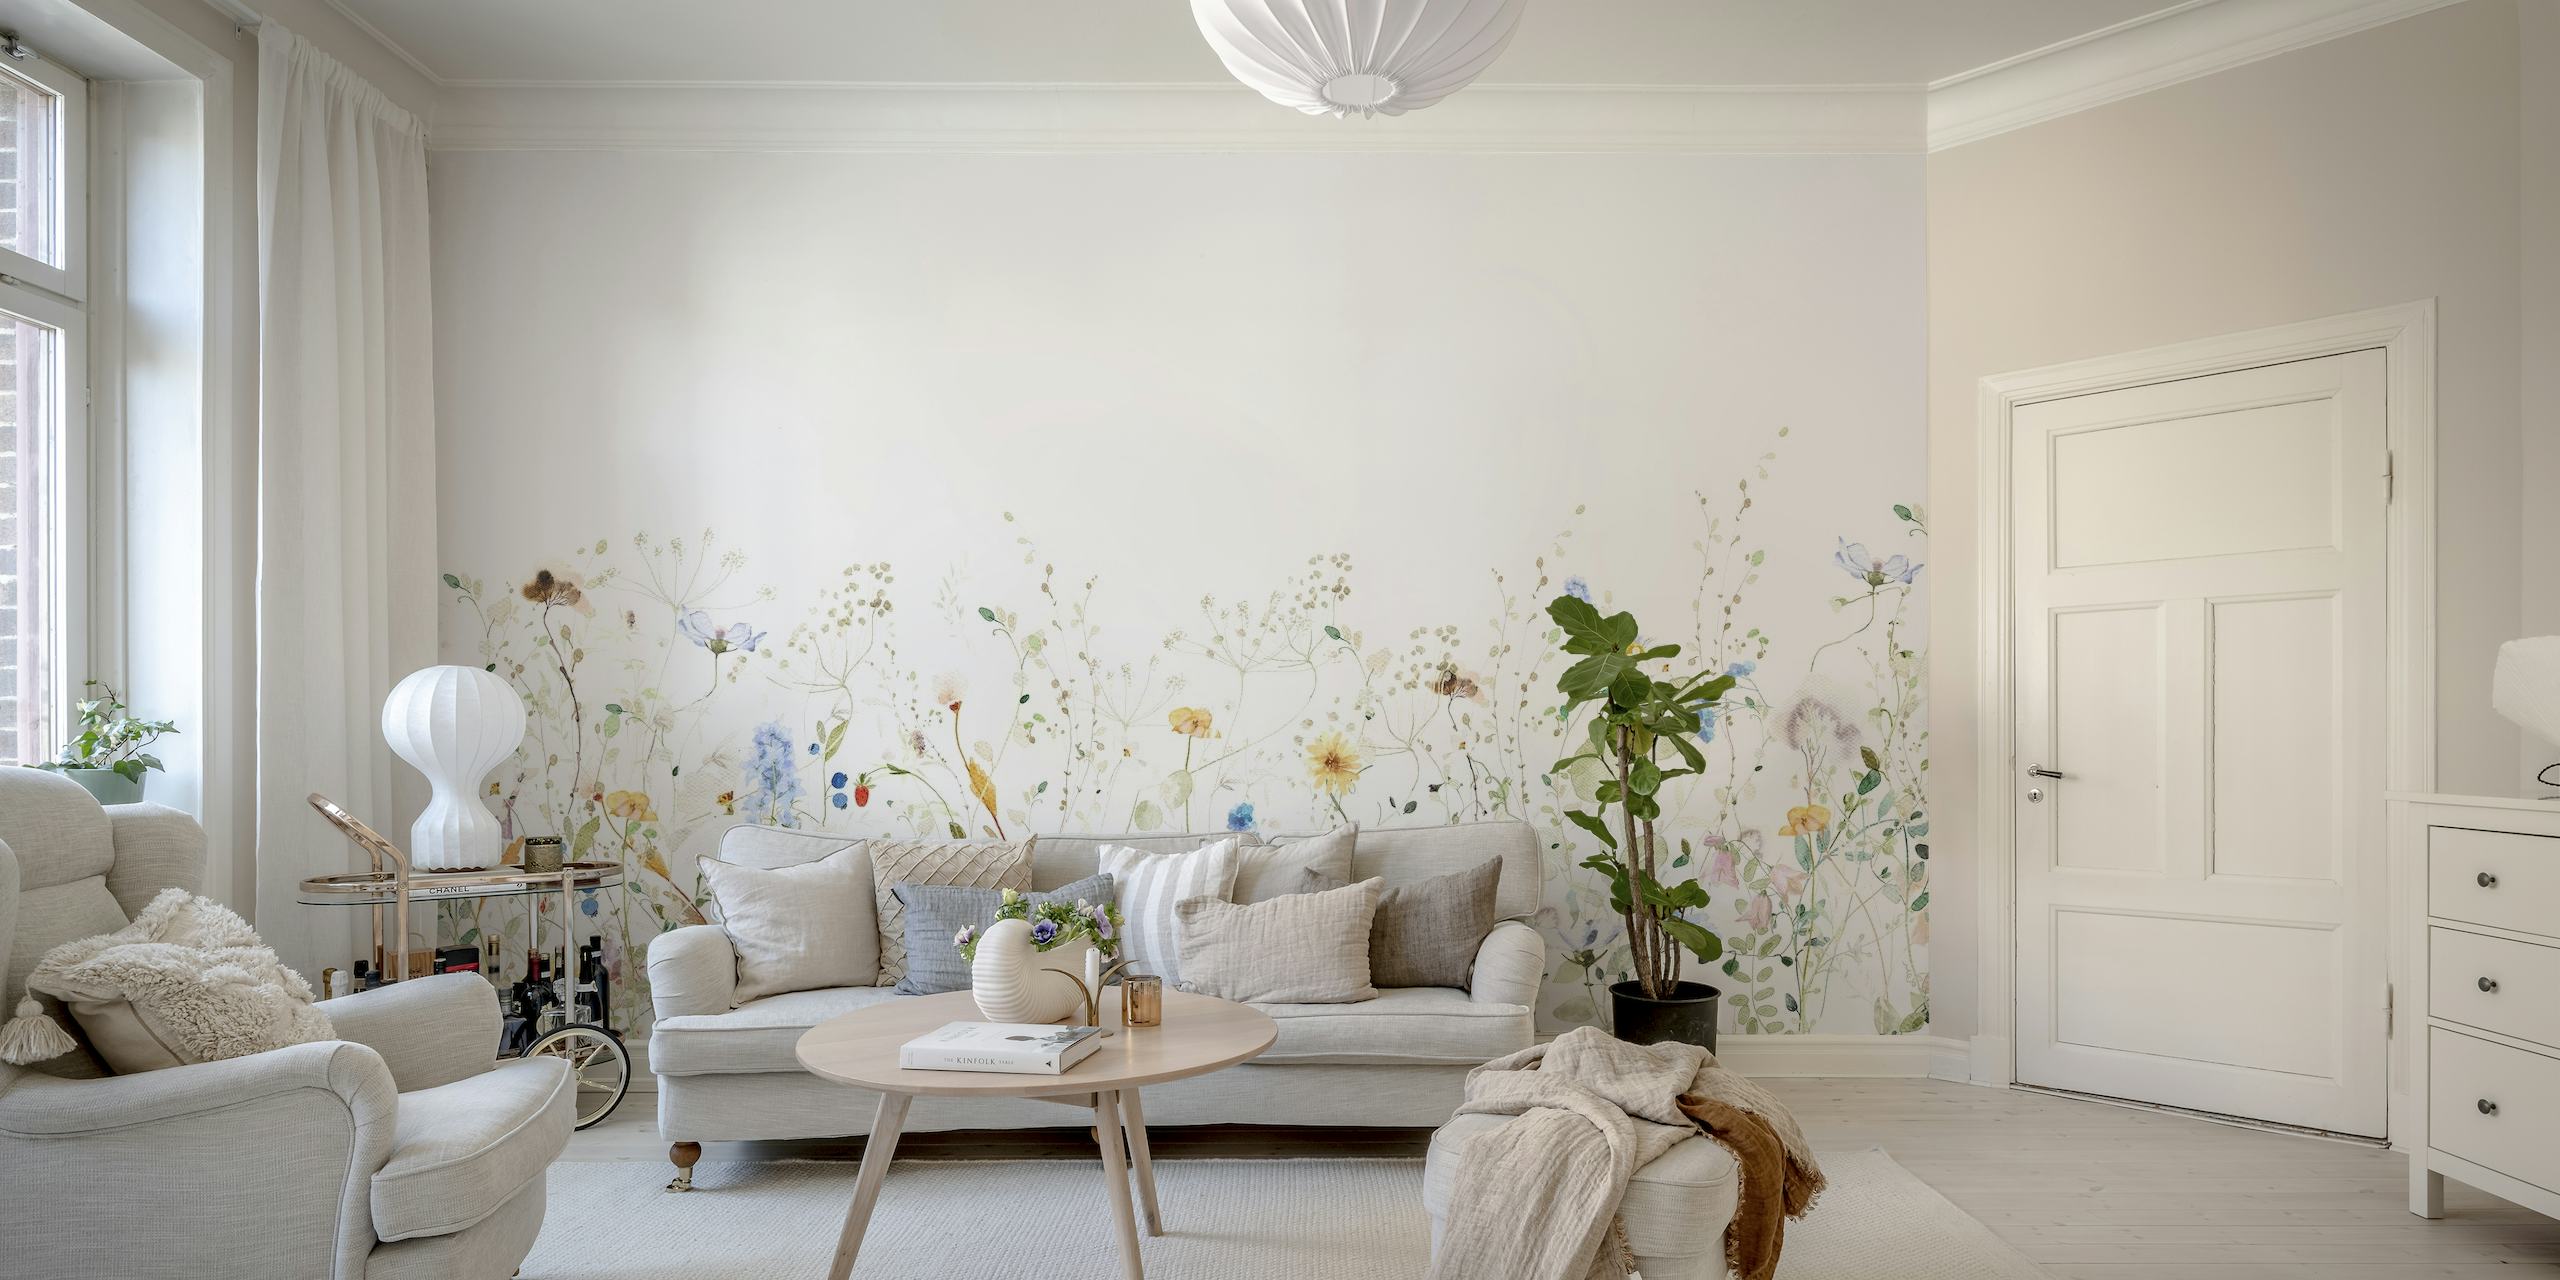 Färgglada vildblommor fint spridda över en ljus bakgrund och skapar en frodig ängsliknande väggmålning